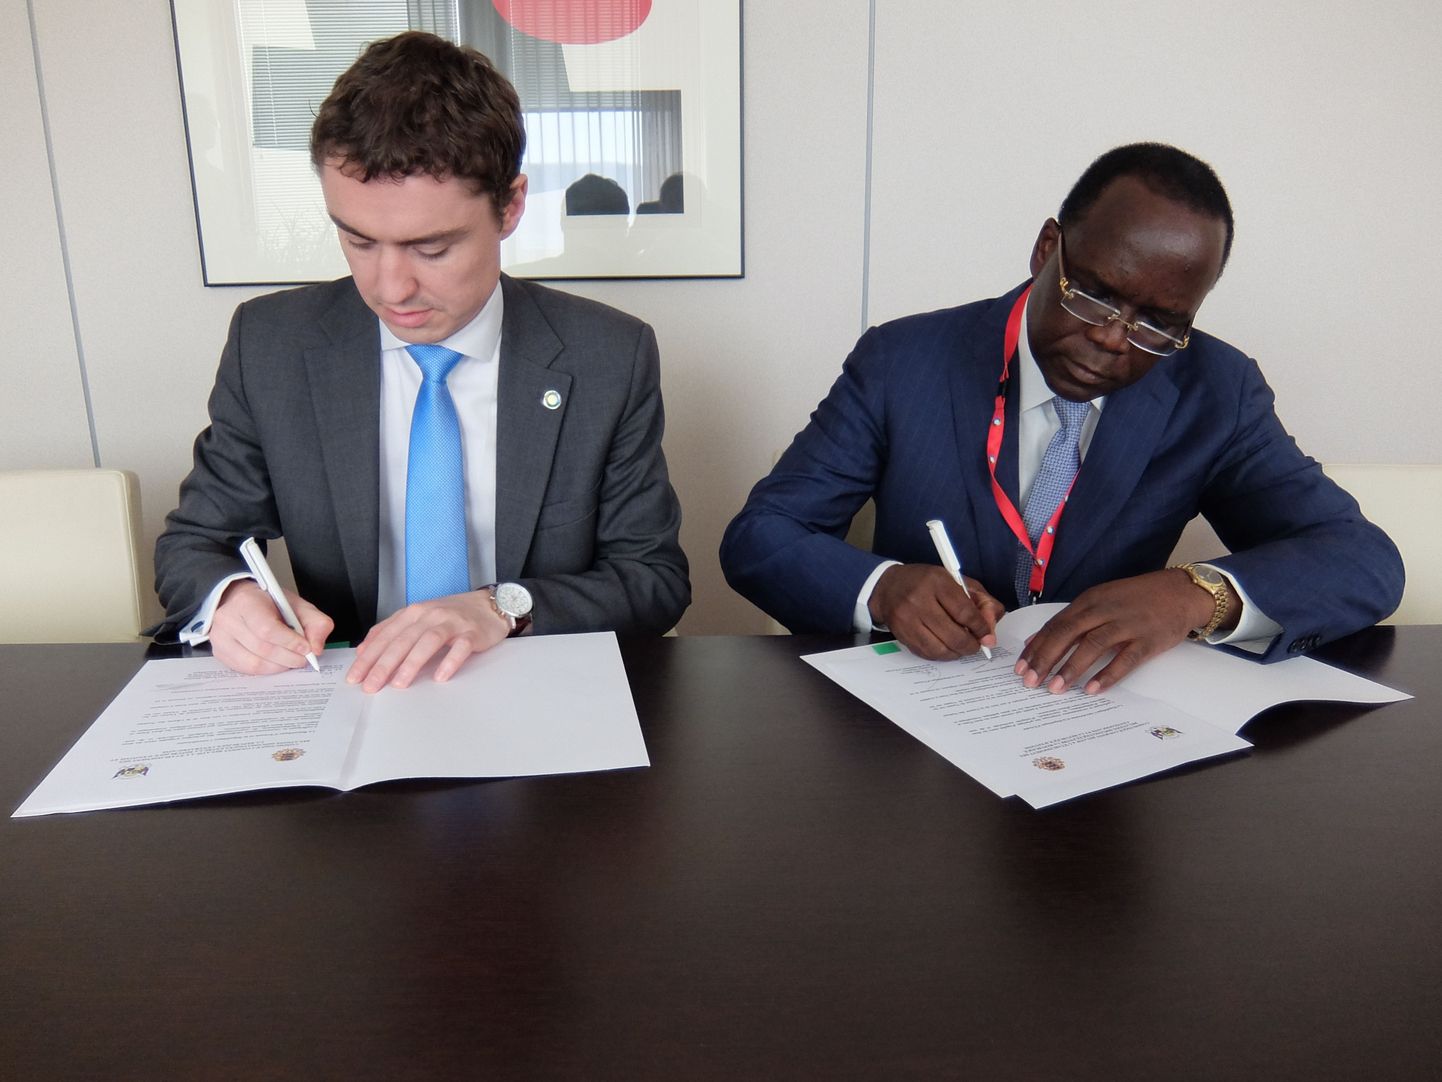 Eesti sõlmis täna Brüsselis diplomaatilised suhted Kesk-Aafrika Vabariigiga. Sellekohasele kommünikeele kirjutasid alla peaminister Taavi Rõivas ning Kesk-Aafrika Vabariigi välisminister Toussaint Kongo-Doudou.